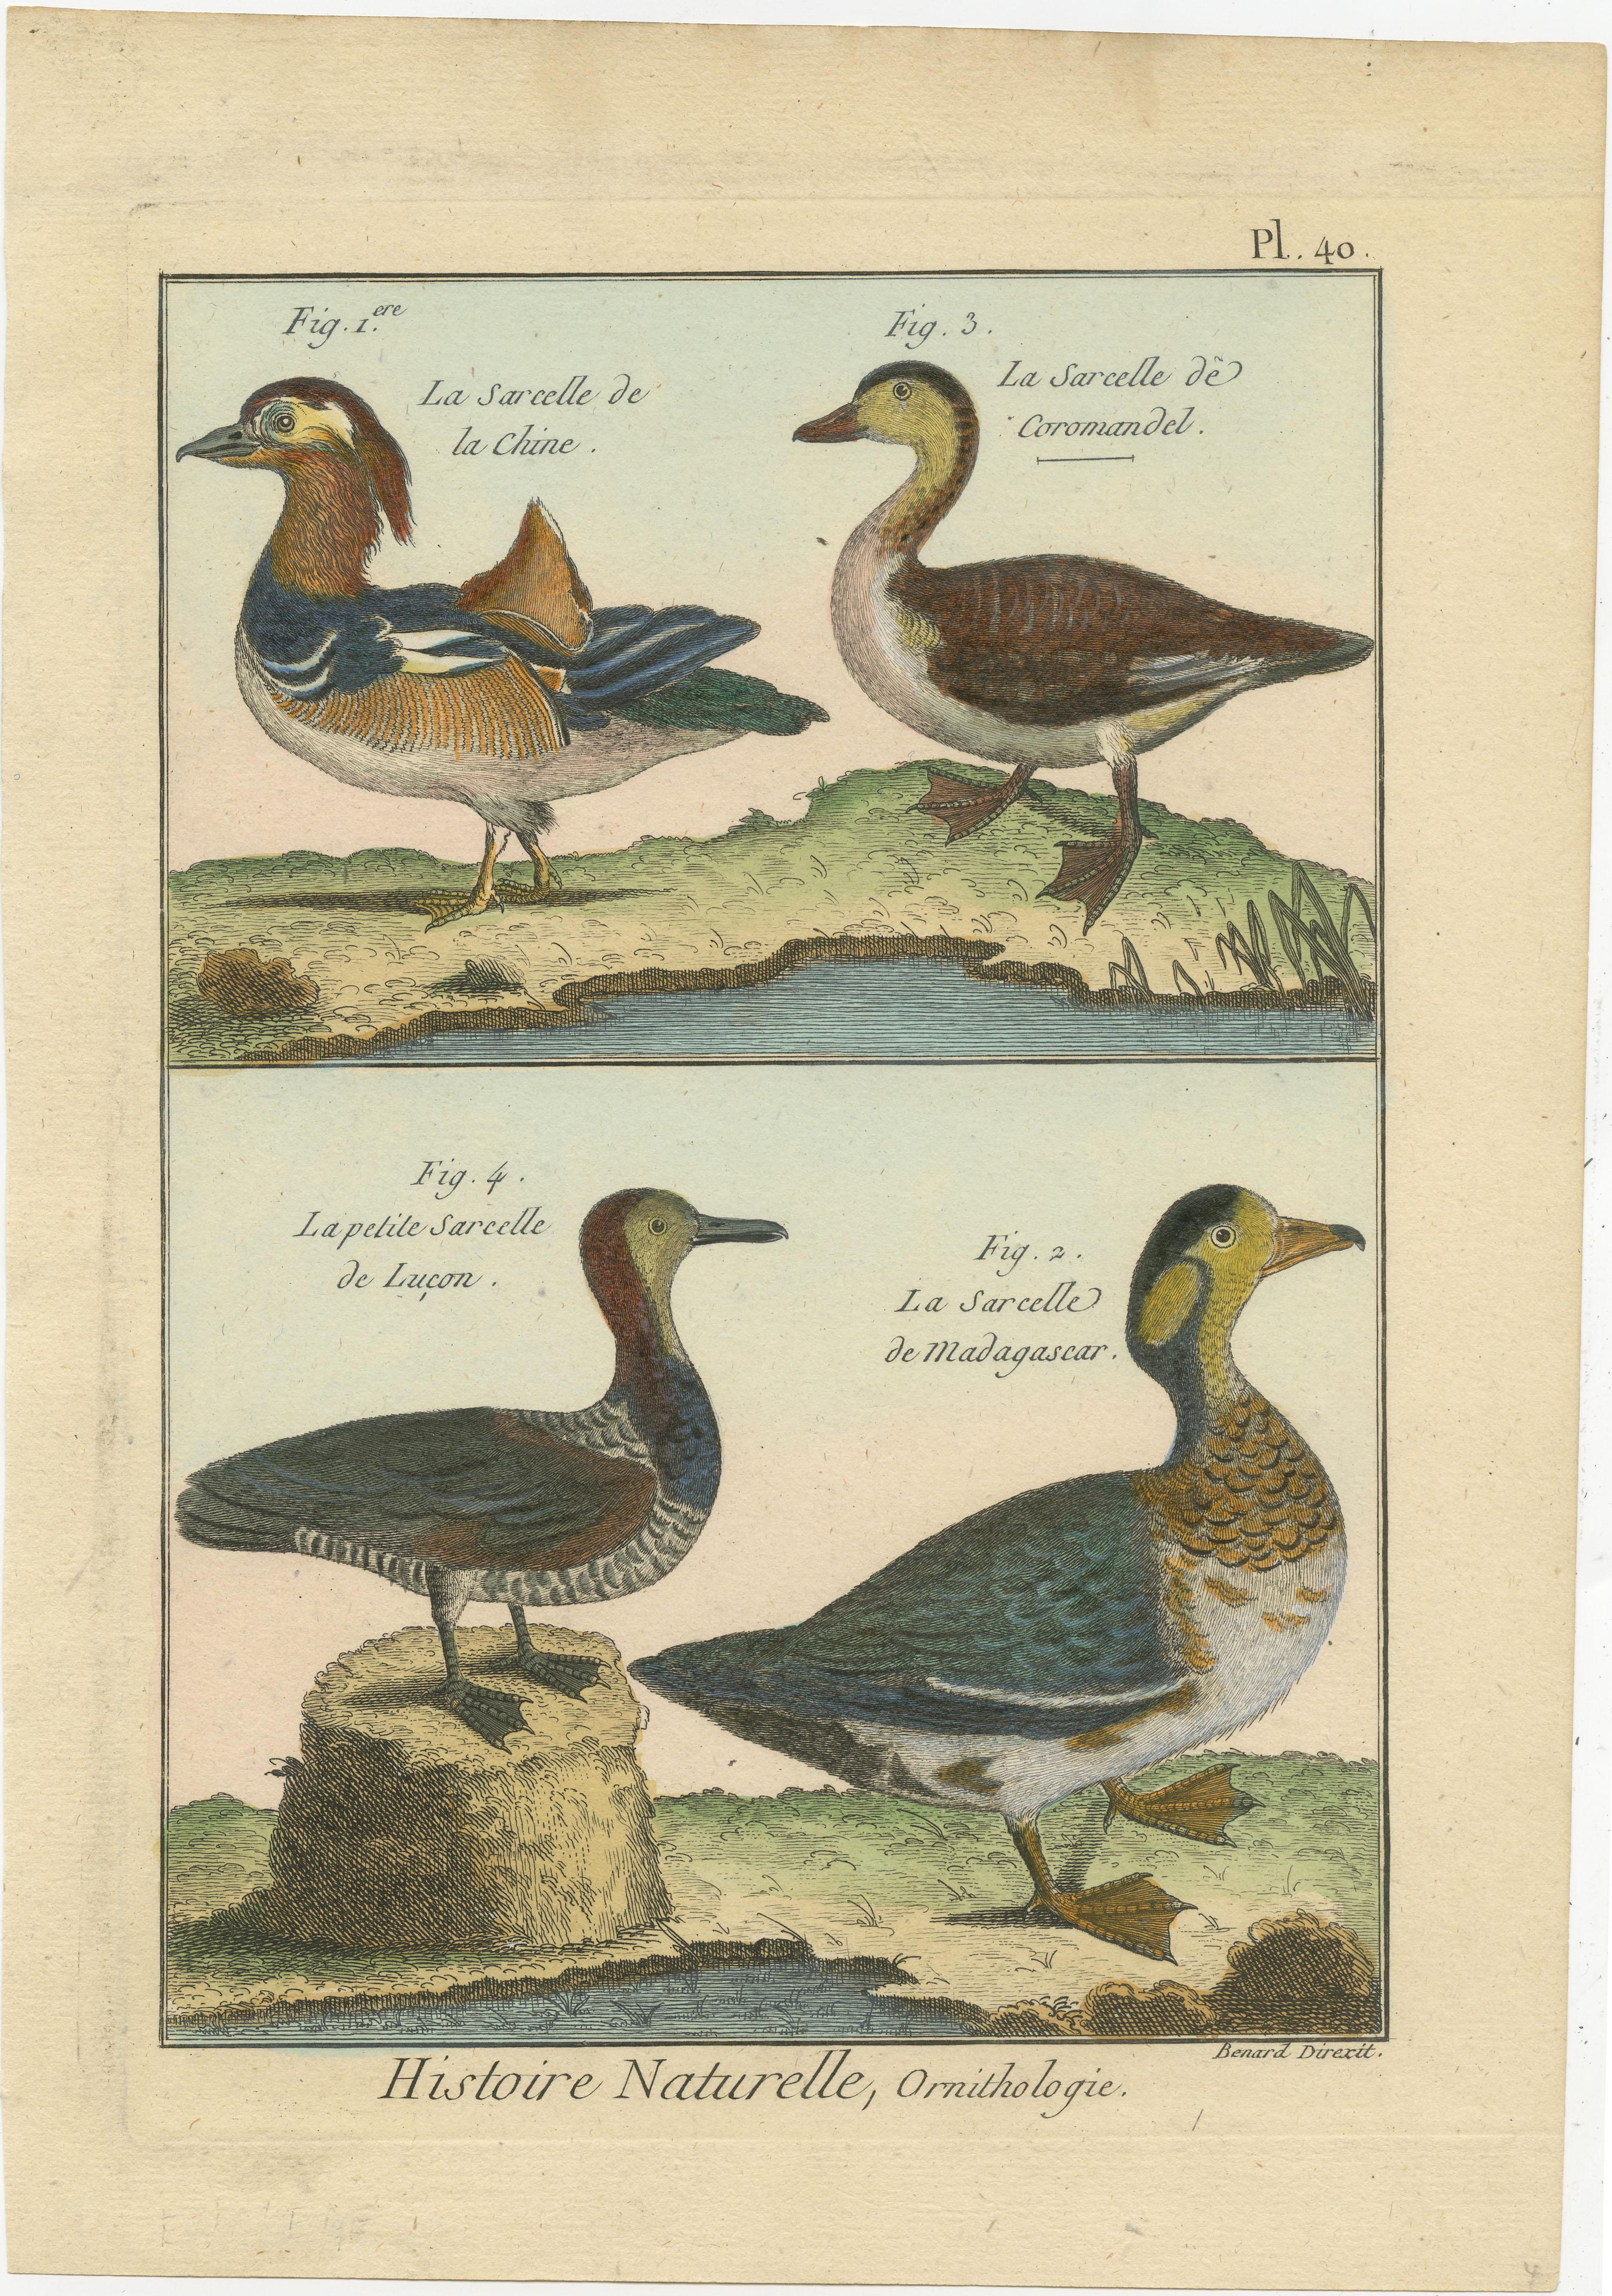 Eine authentische, perfekte und helle, ursprünglich handkolorierte Illustration von 4 Enten, auf Pergamentpapier (Kupferstich). Es hat einen feinen Glanz durch das authentisch aufgetragene Eigelb als Firnis. Der Künstler ist Robert Bernard (1792).